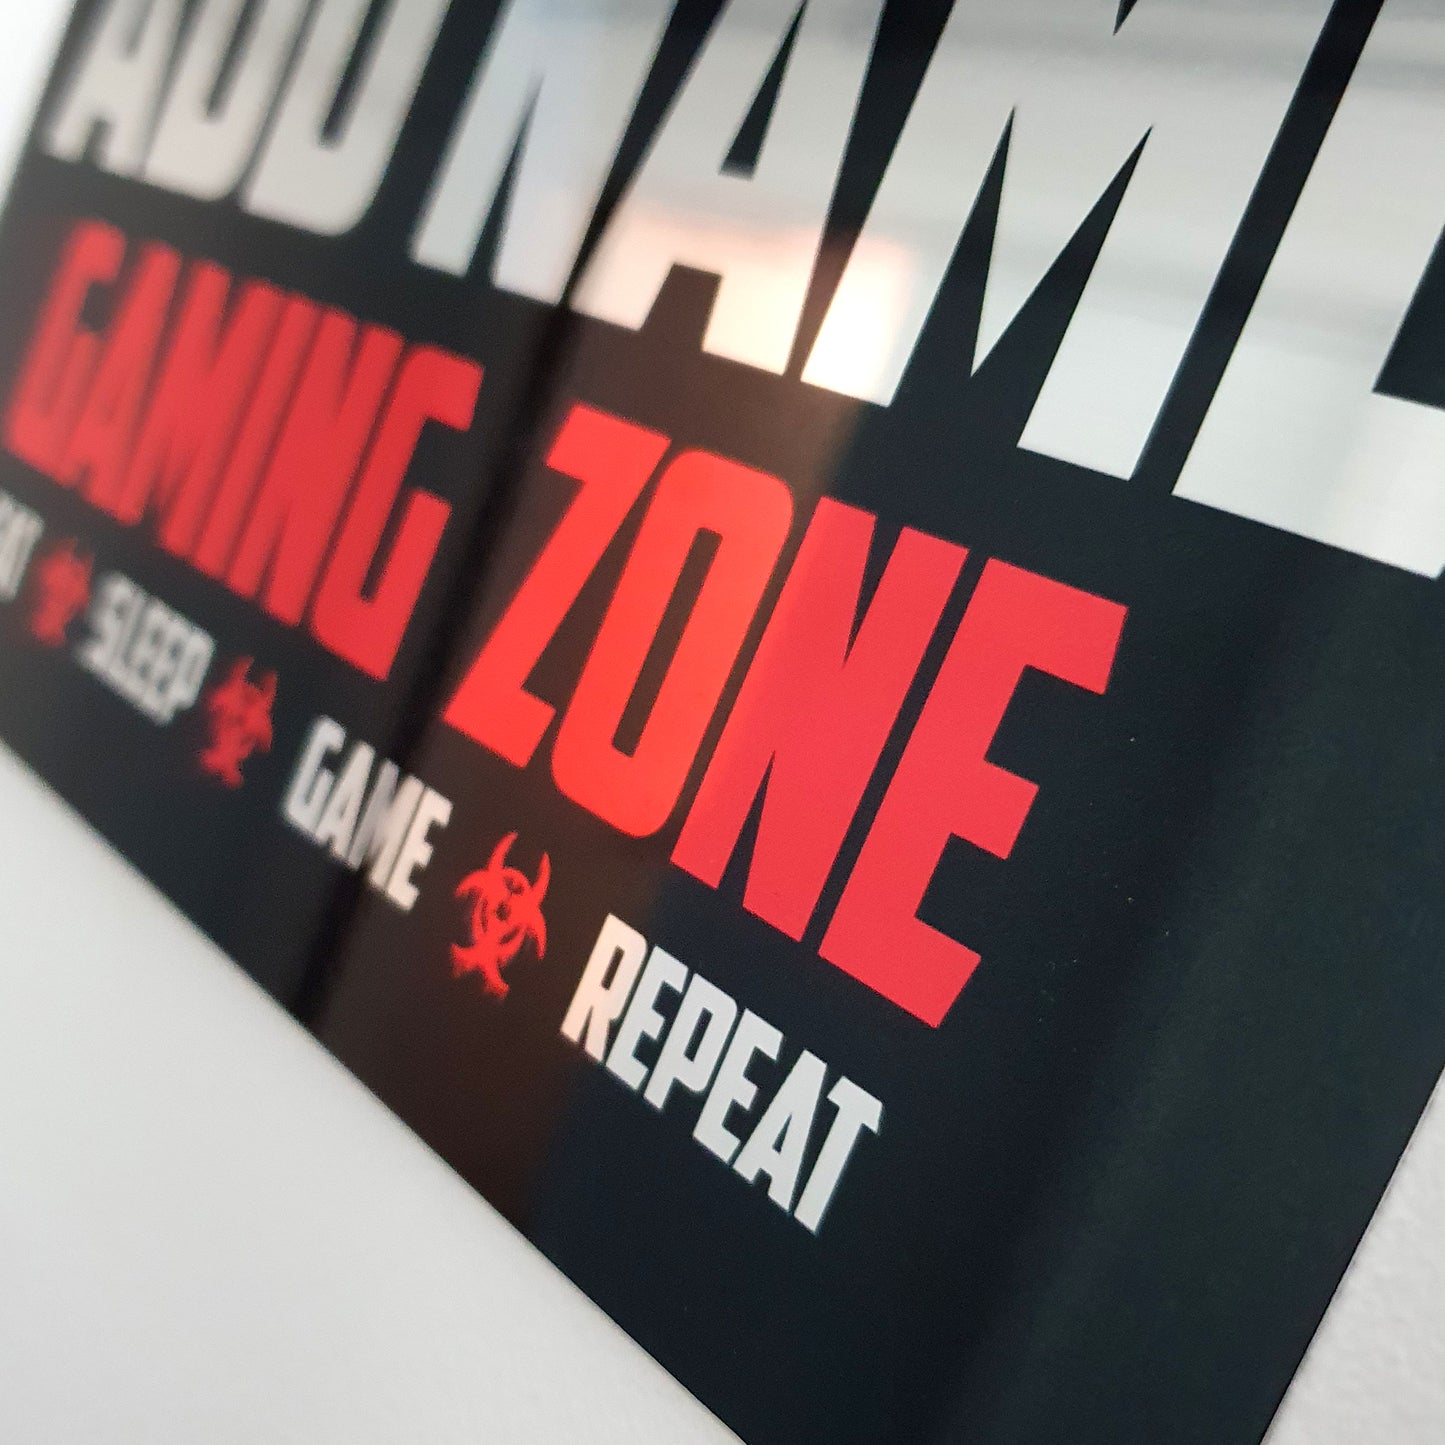 Personalisiertes rotes Gamer-Schild aus Metallspiegel – Gaming Zone Caution